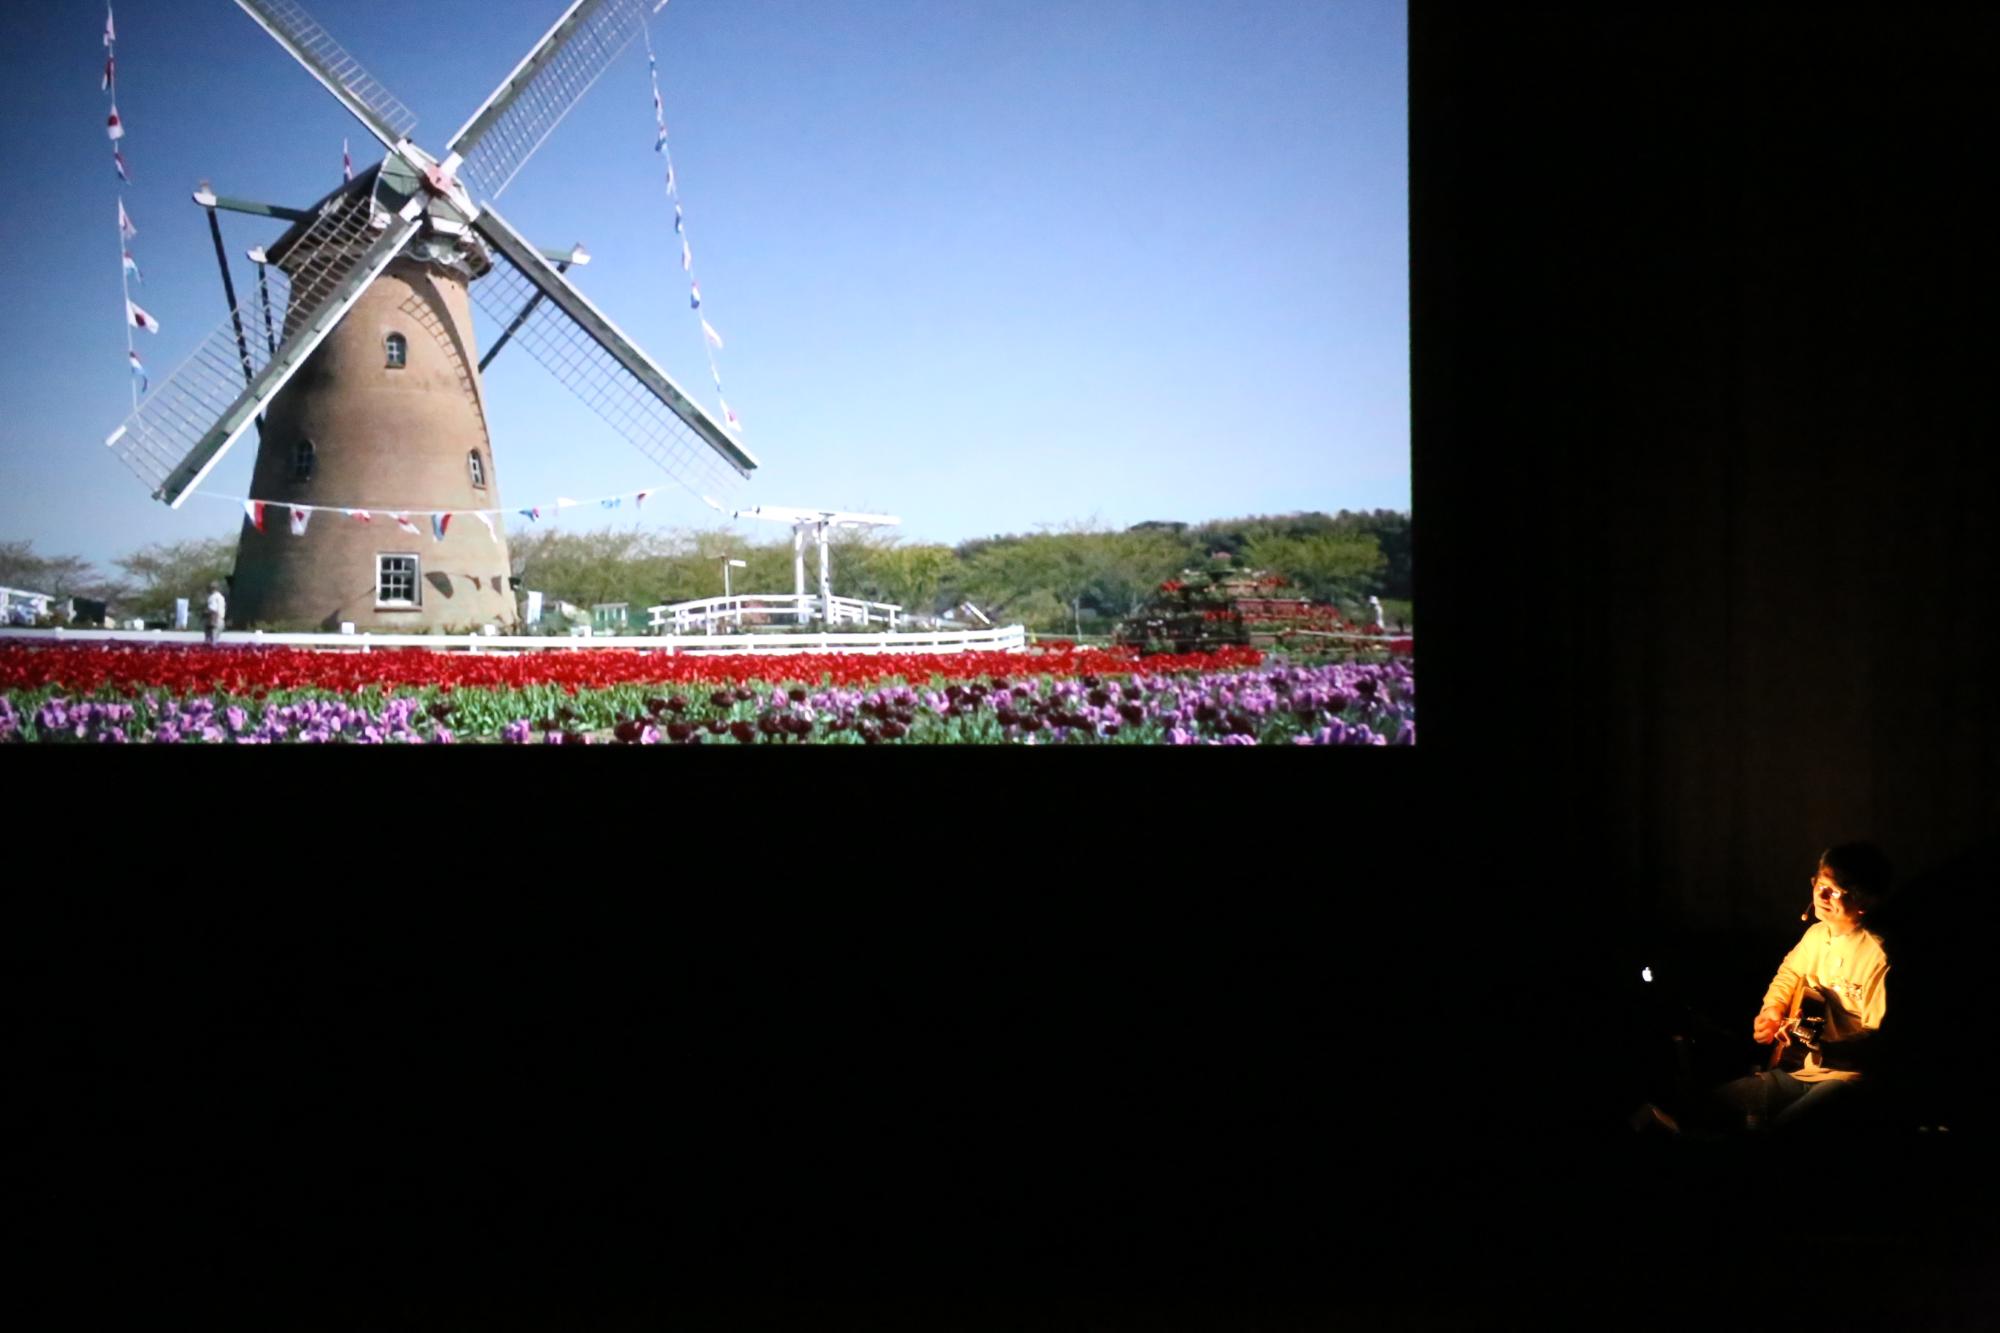 プロジェクトスクリーンに映るチューリップと大きな風車の映像と、ライトアップされている男性が楽器を演奏している写真